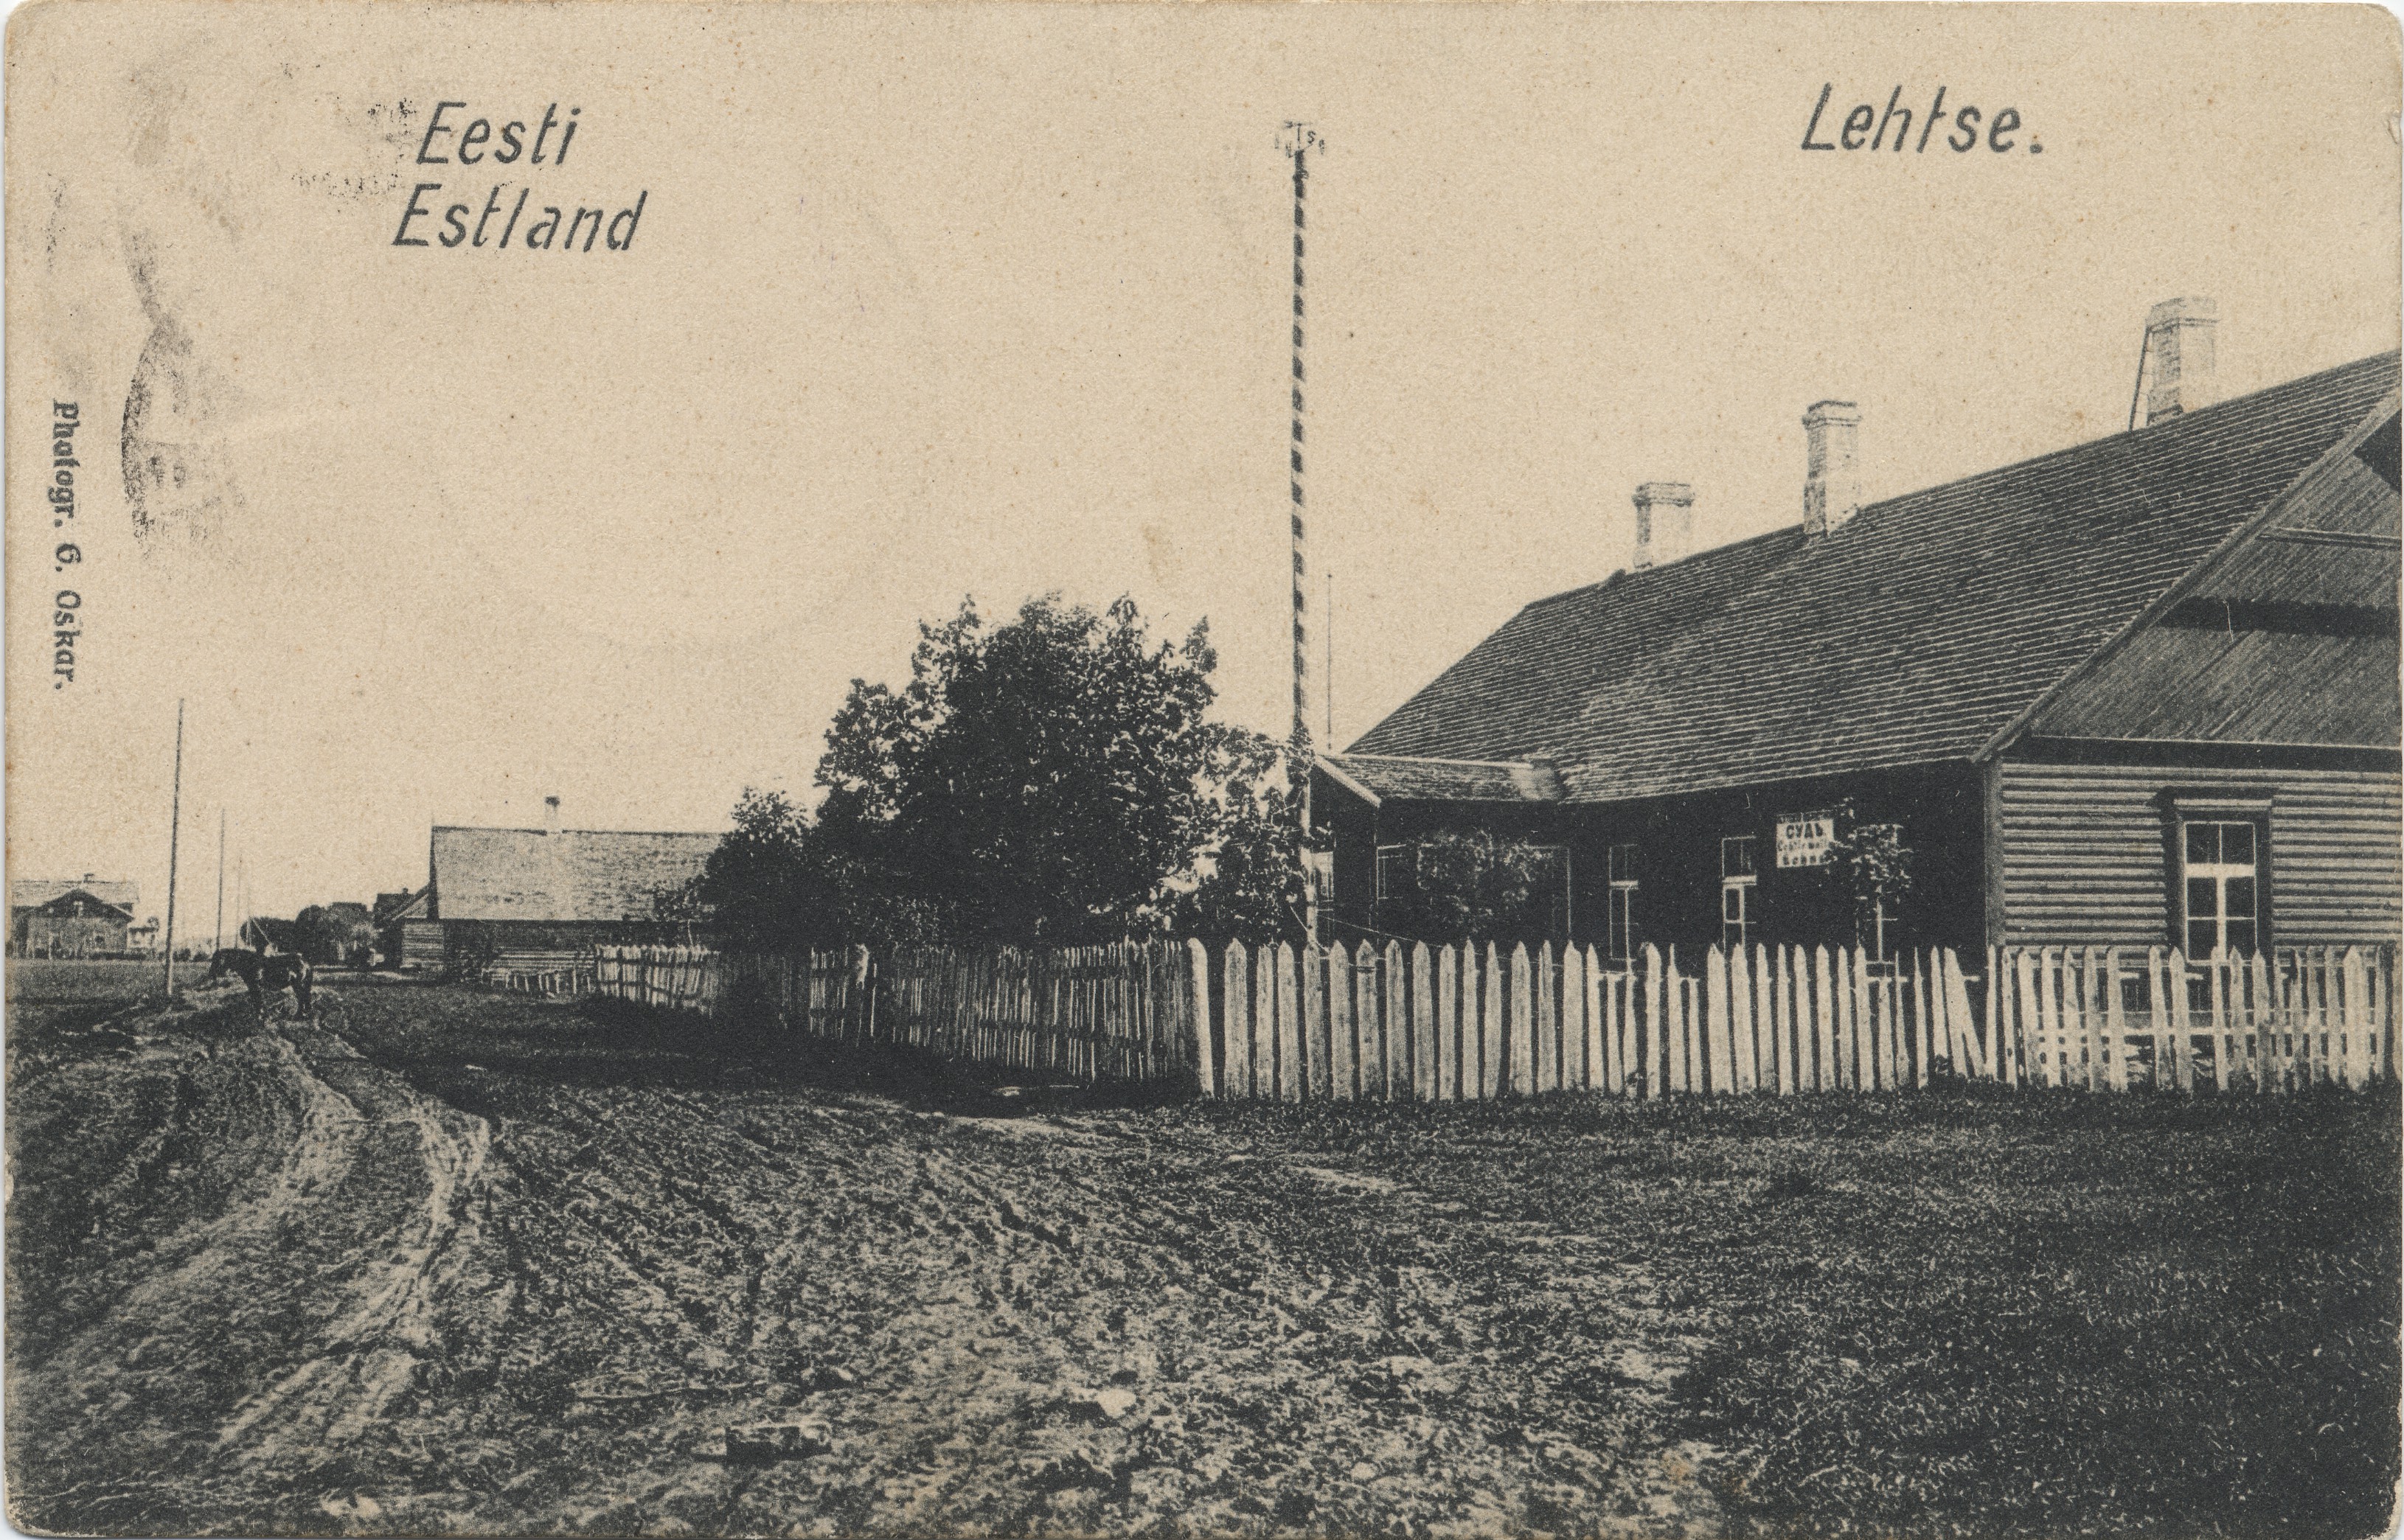 Estonia : Lehtse = Estonia